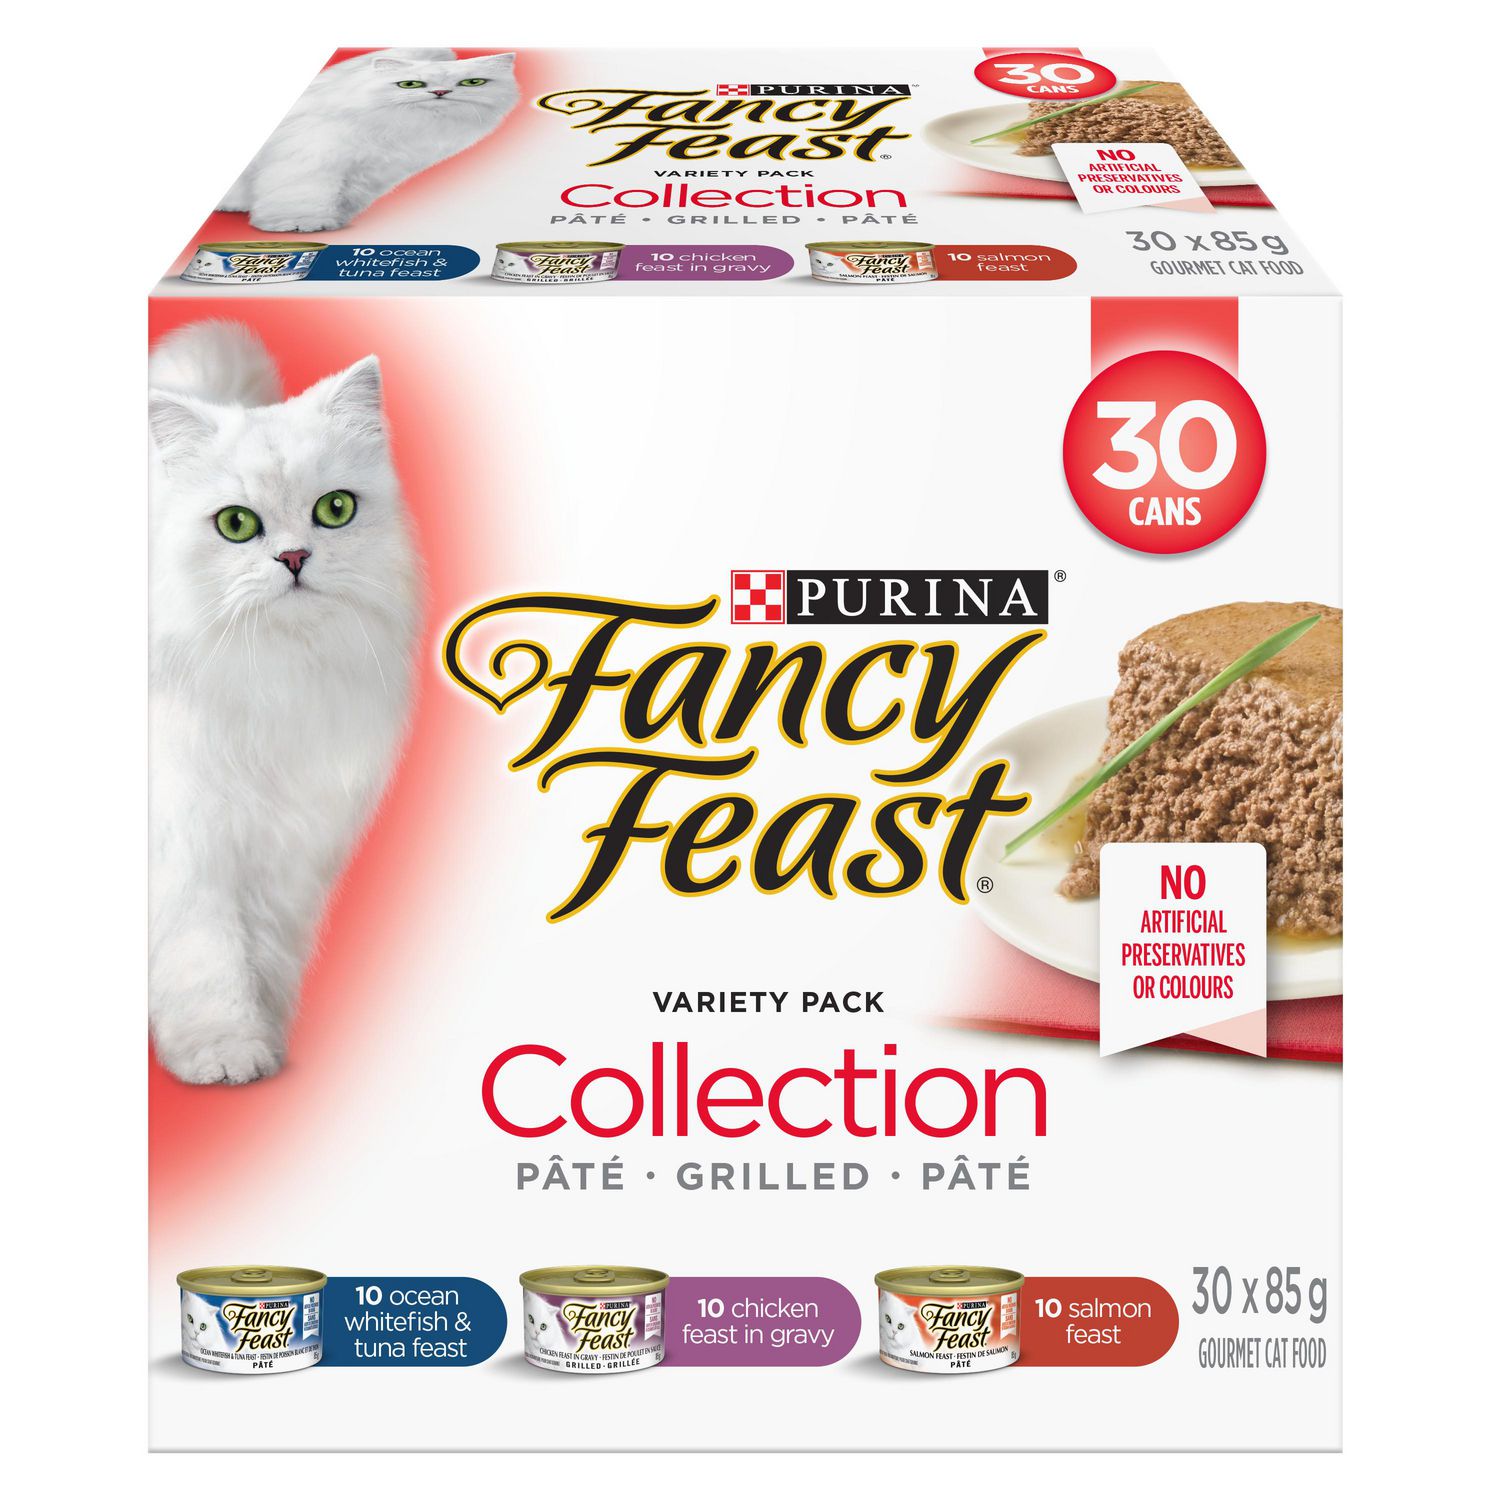 fancy feast wet cat food